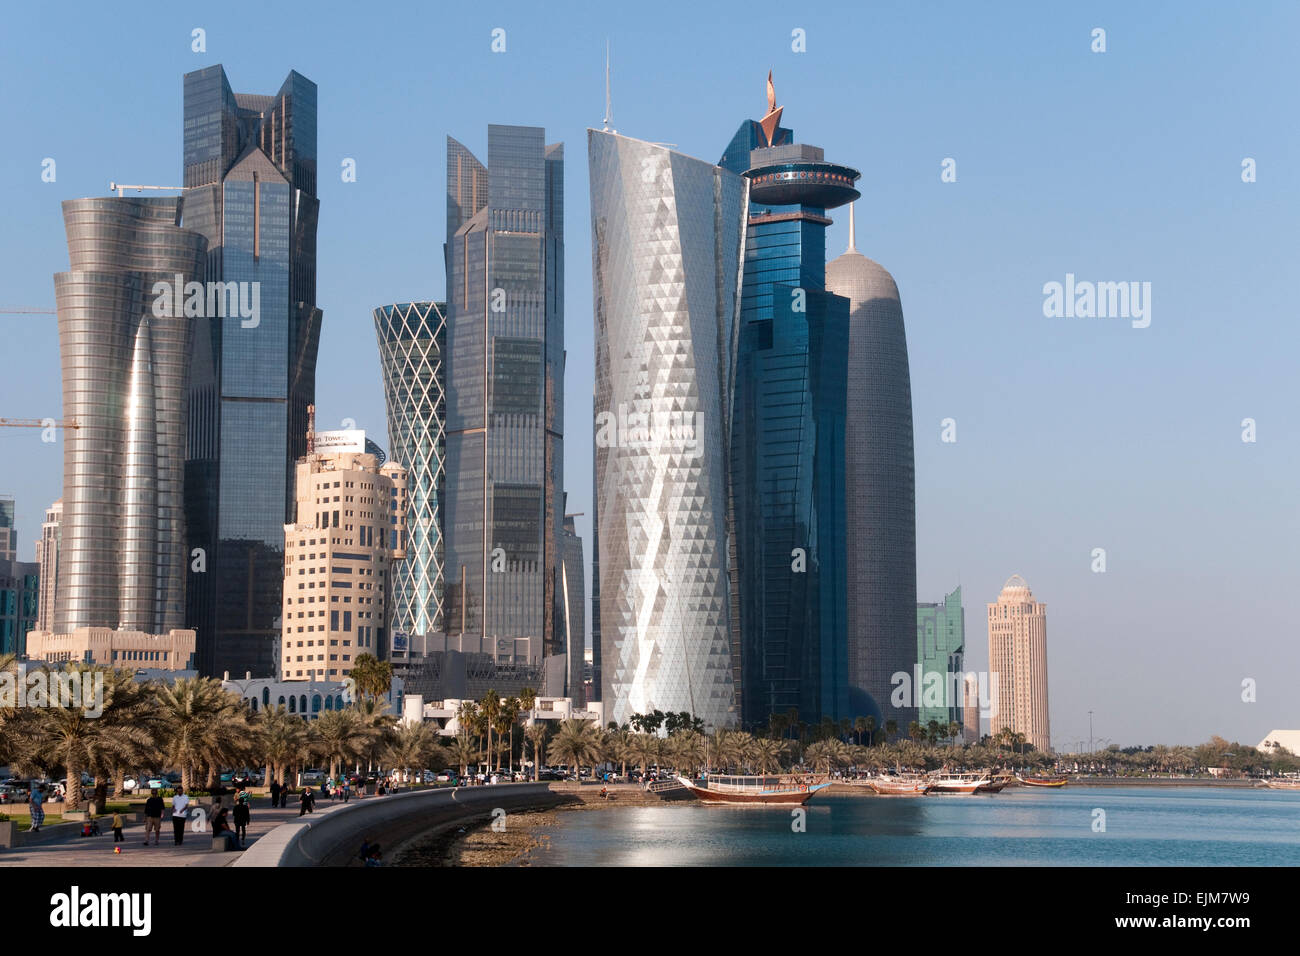 Fußgänger gehen die Uferpromenade Corniche, unten Wolkenkratzer in der Stadt Doha in dem Golfstaat Katar. Stockfoto